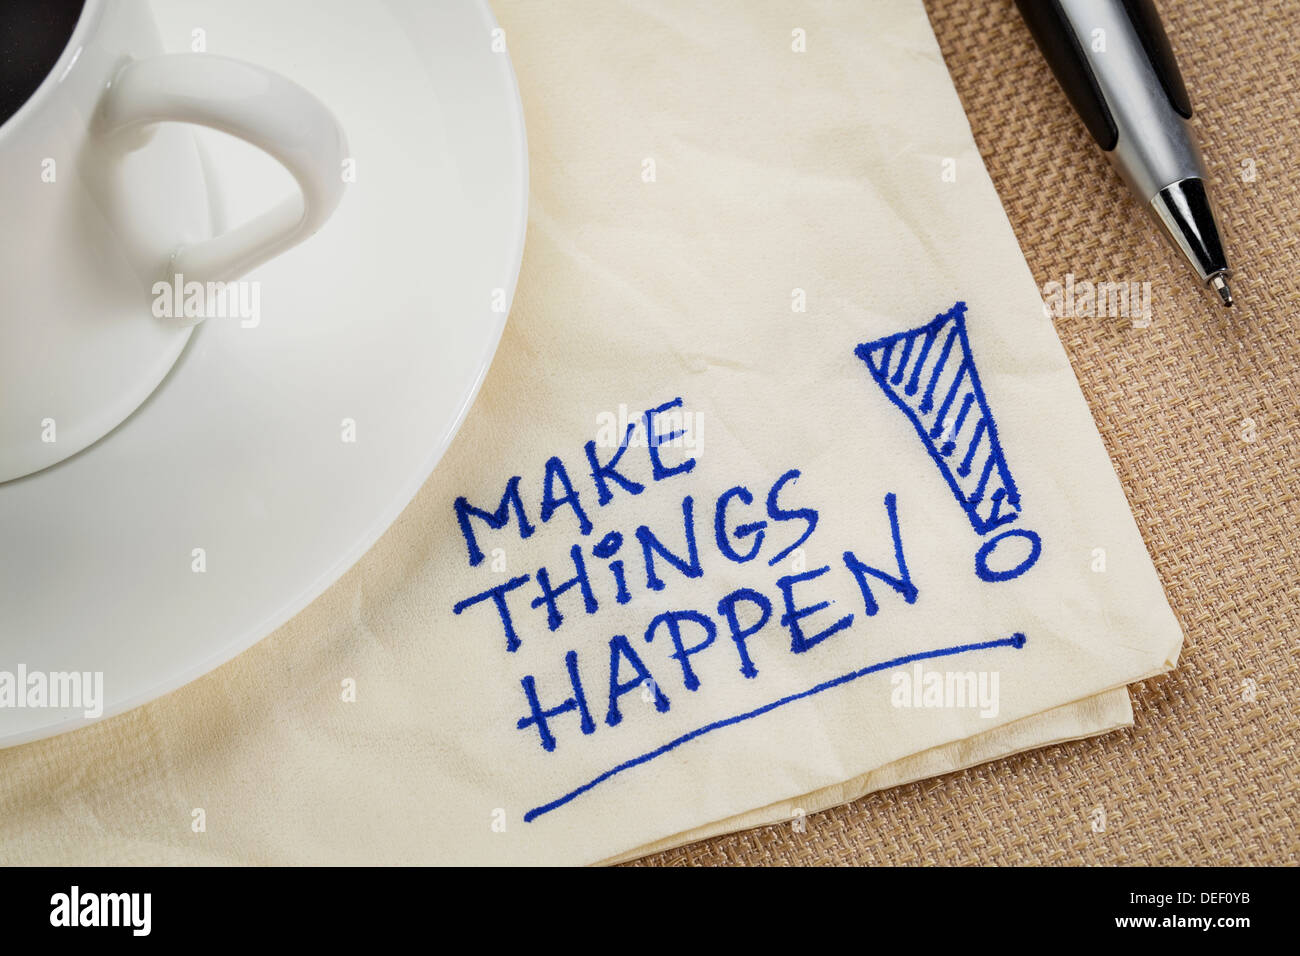 Machen Sie Dinge passieren motivierende Erinnerung - Handschrift auf einer Serviette mit Kaffeetasse Stockfoto